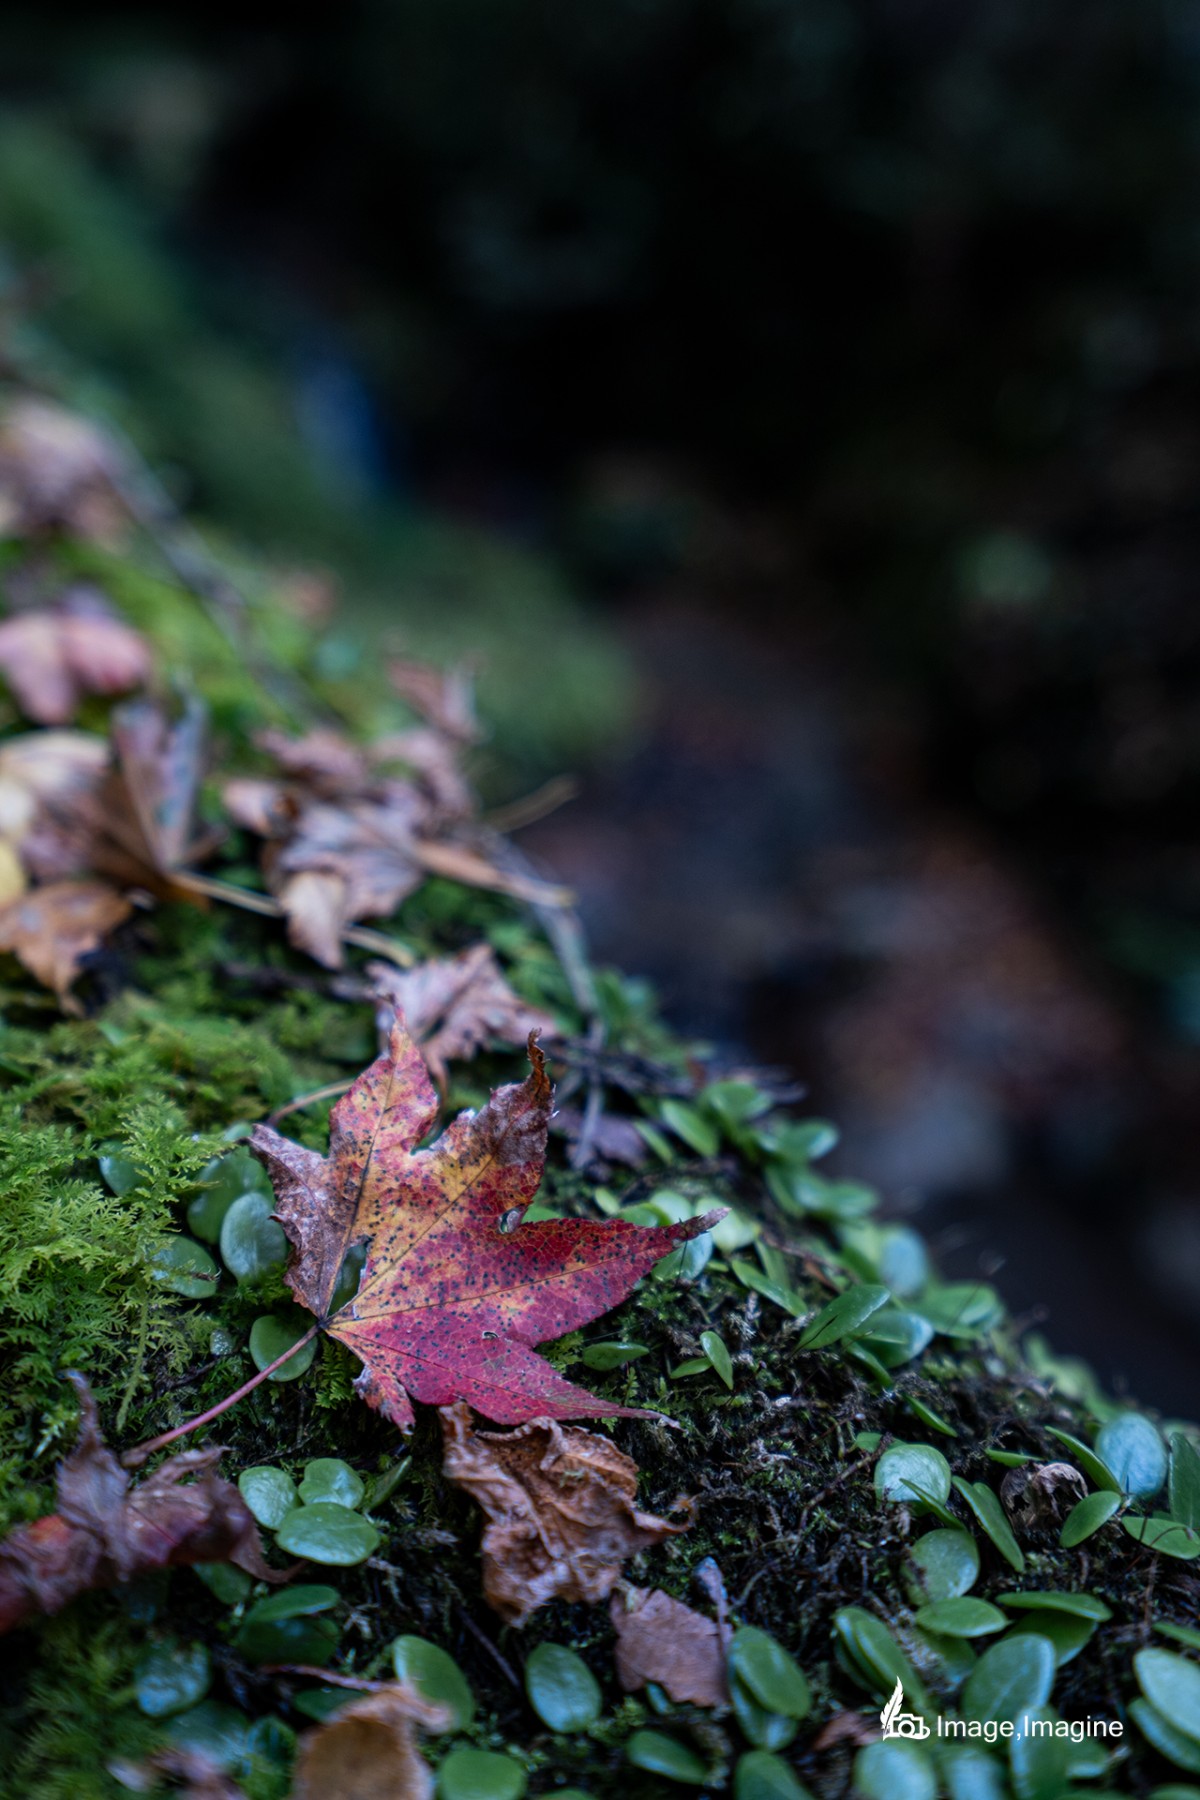 鞍馬寺で撮影した写真。苔で覆われた地面にの上に、木から枯れておちた紅葉がある。